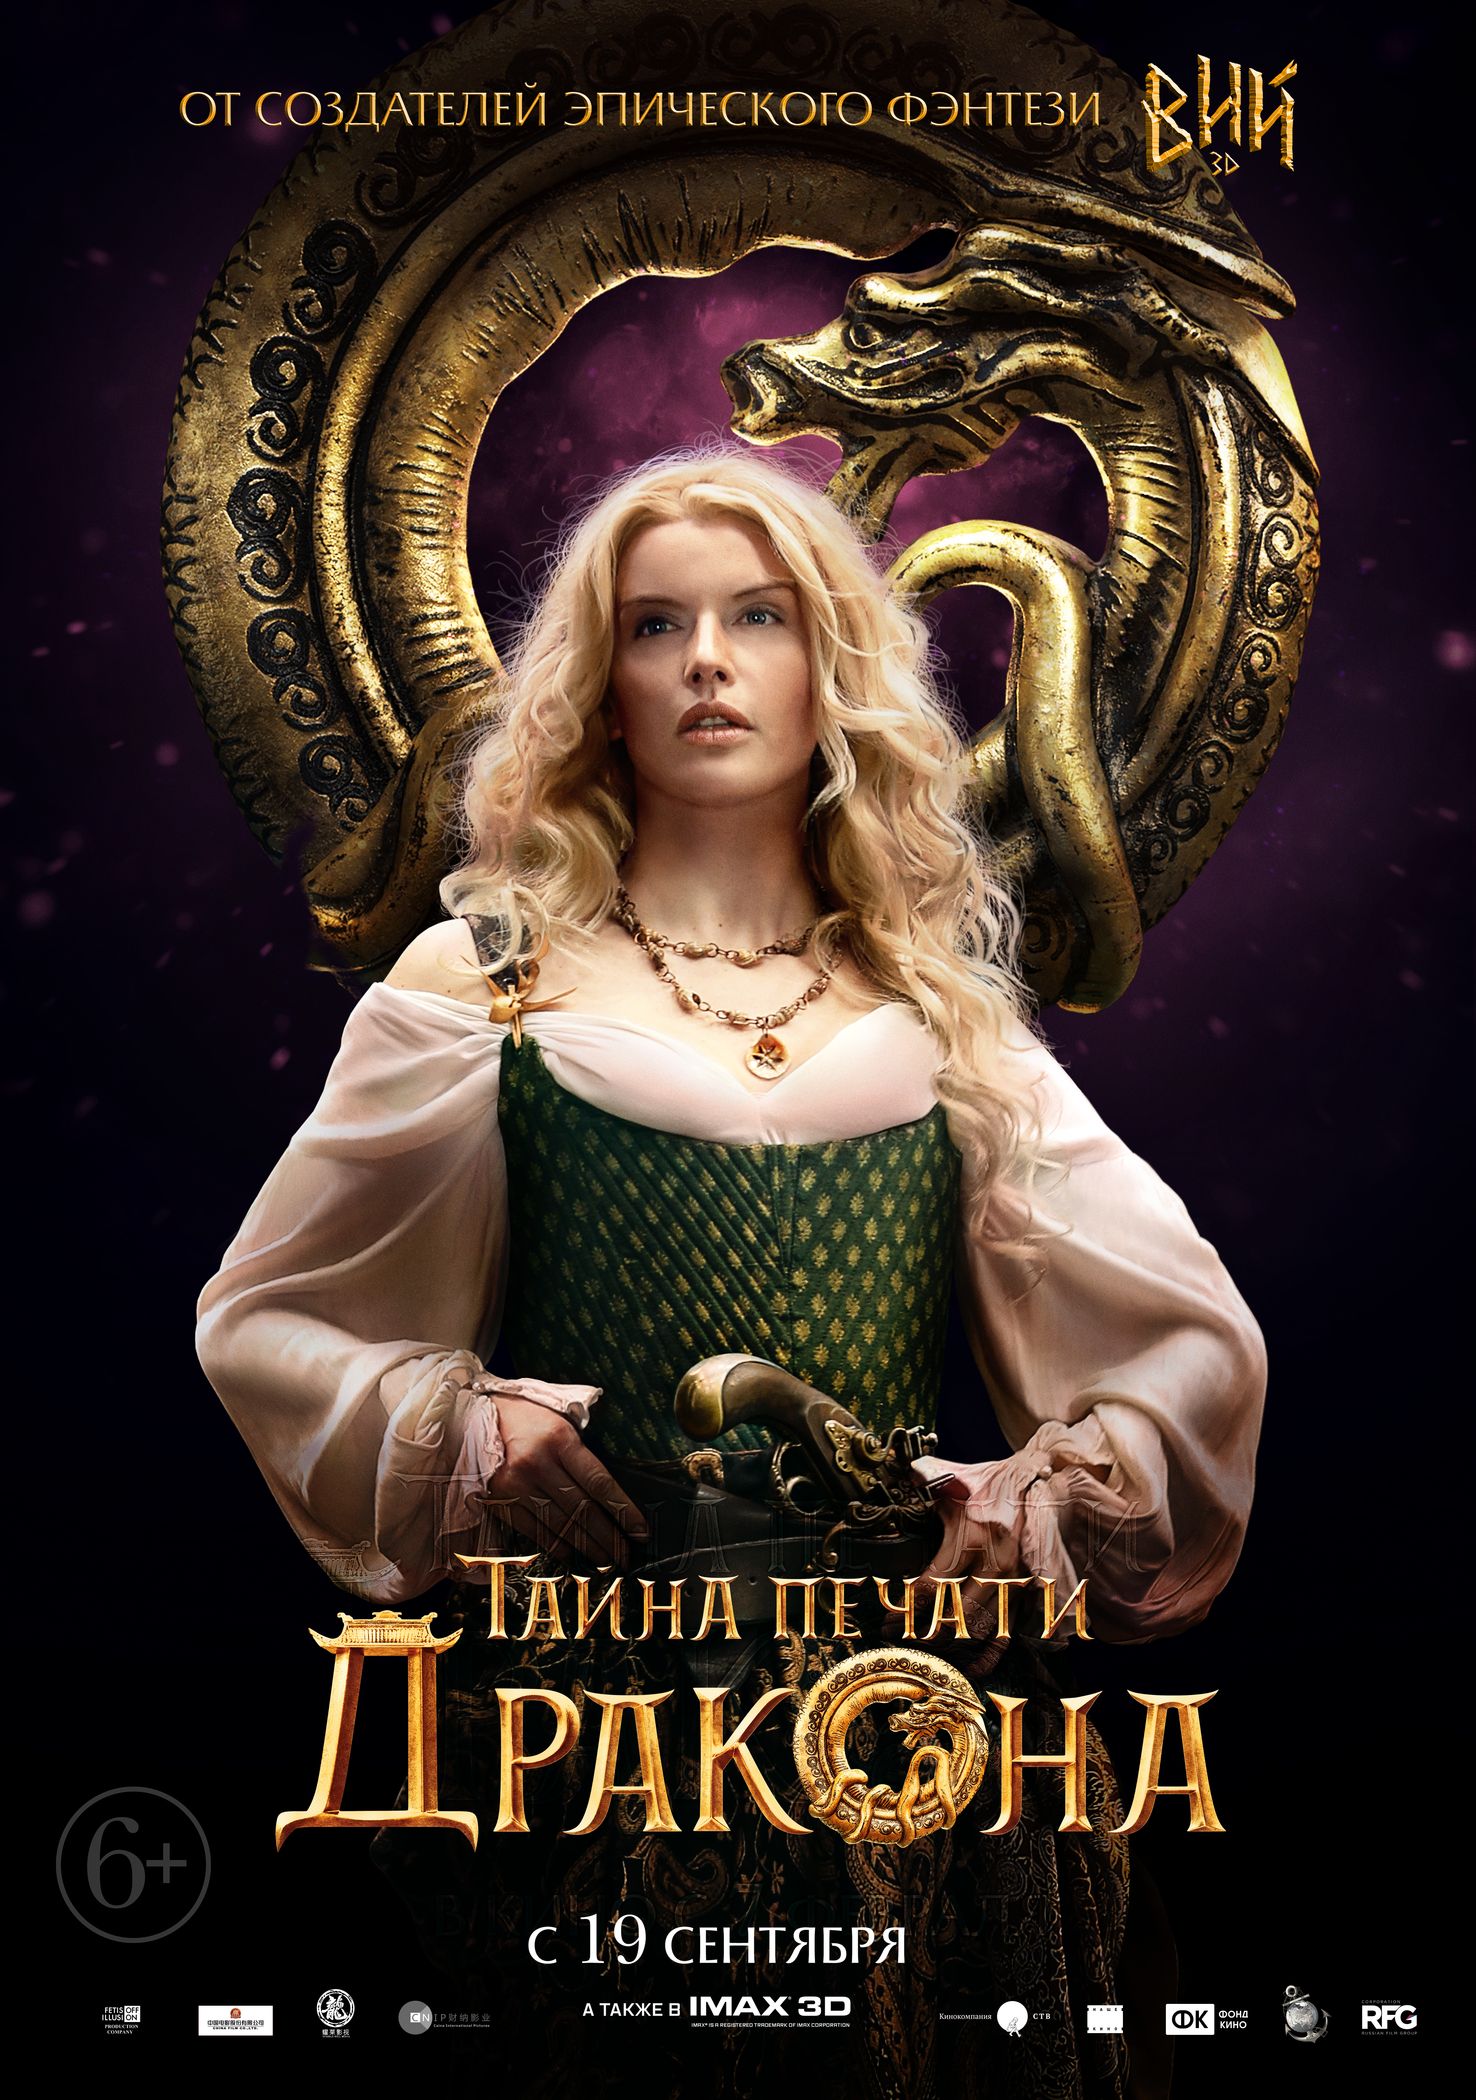 Тайна Печати дракона, постер № 13